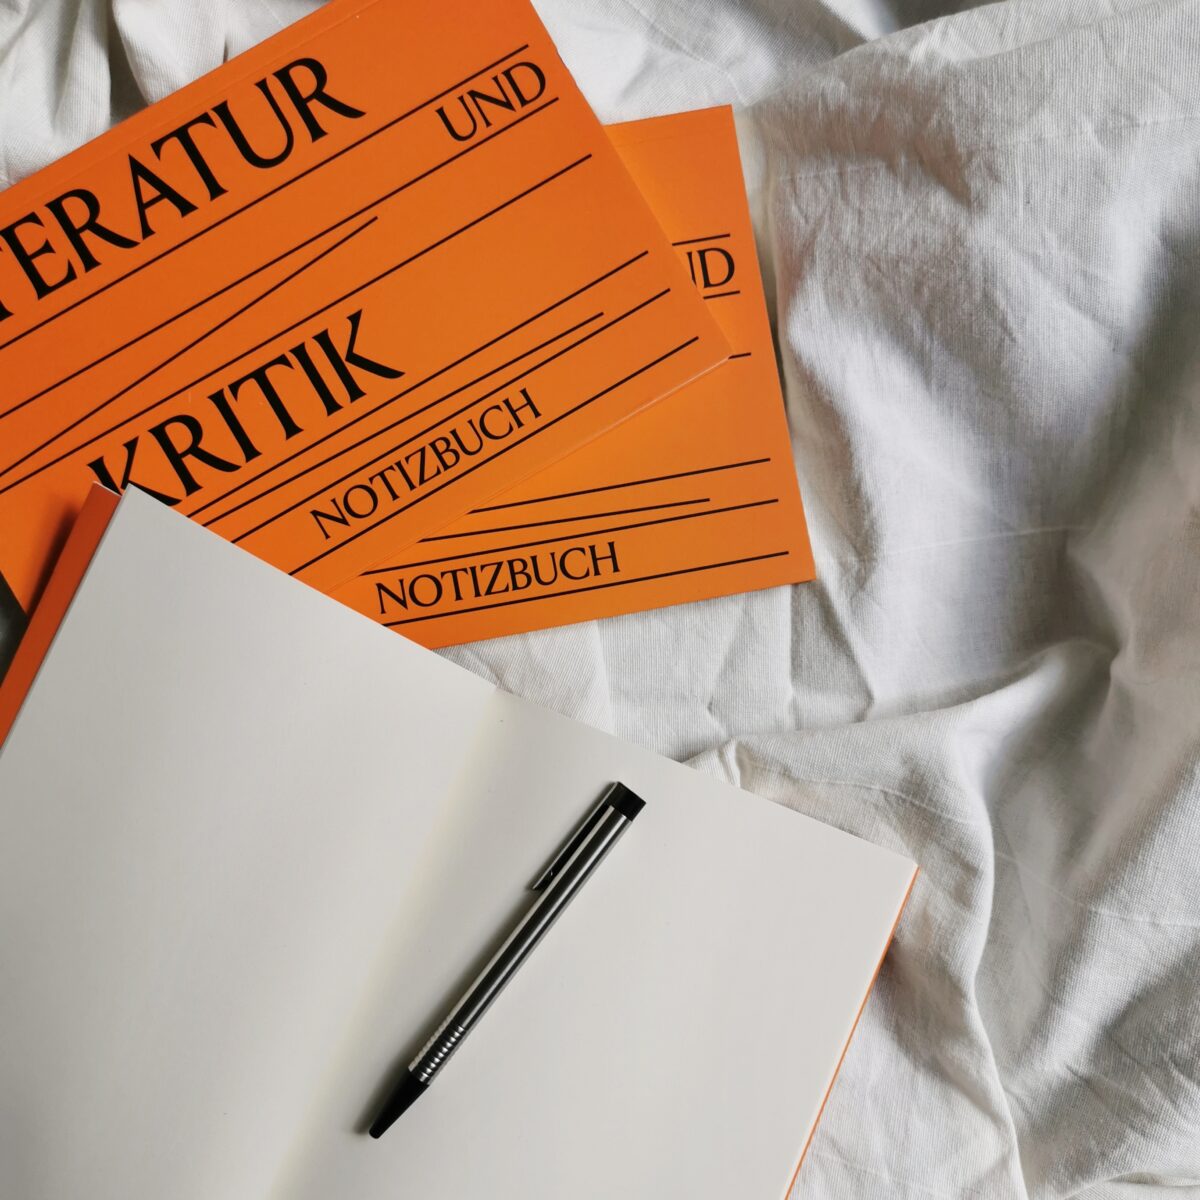 offenes Notizbuch mit Stift, zwei geschlossene Notizbücher in orange auf einer weißen Decke
Auf den Notizbüchern steht "Literatur und Kritik"